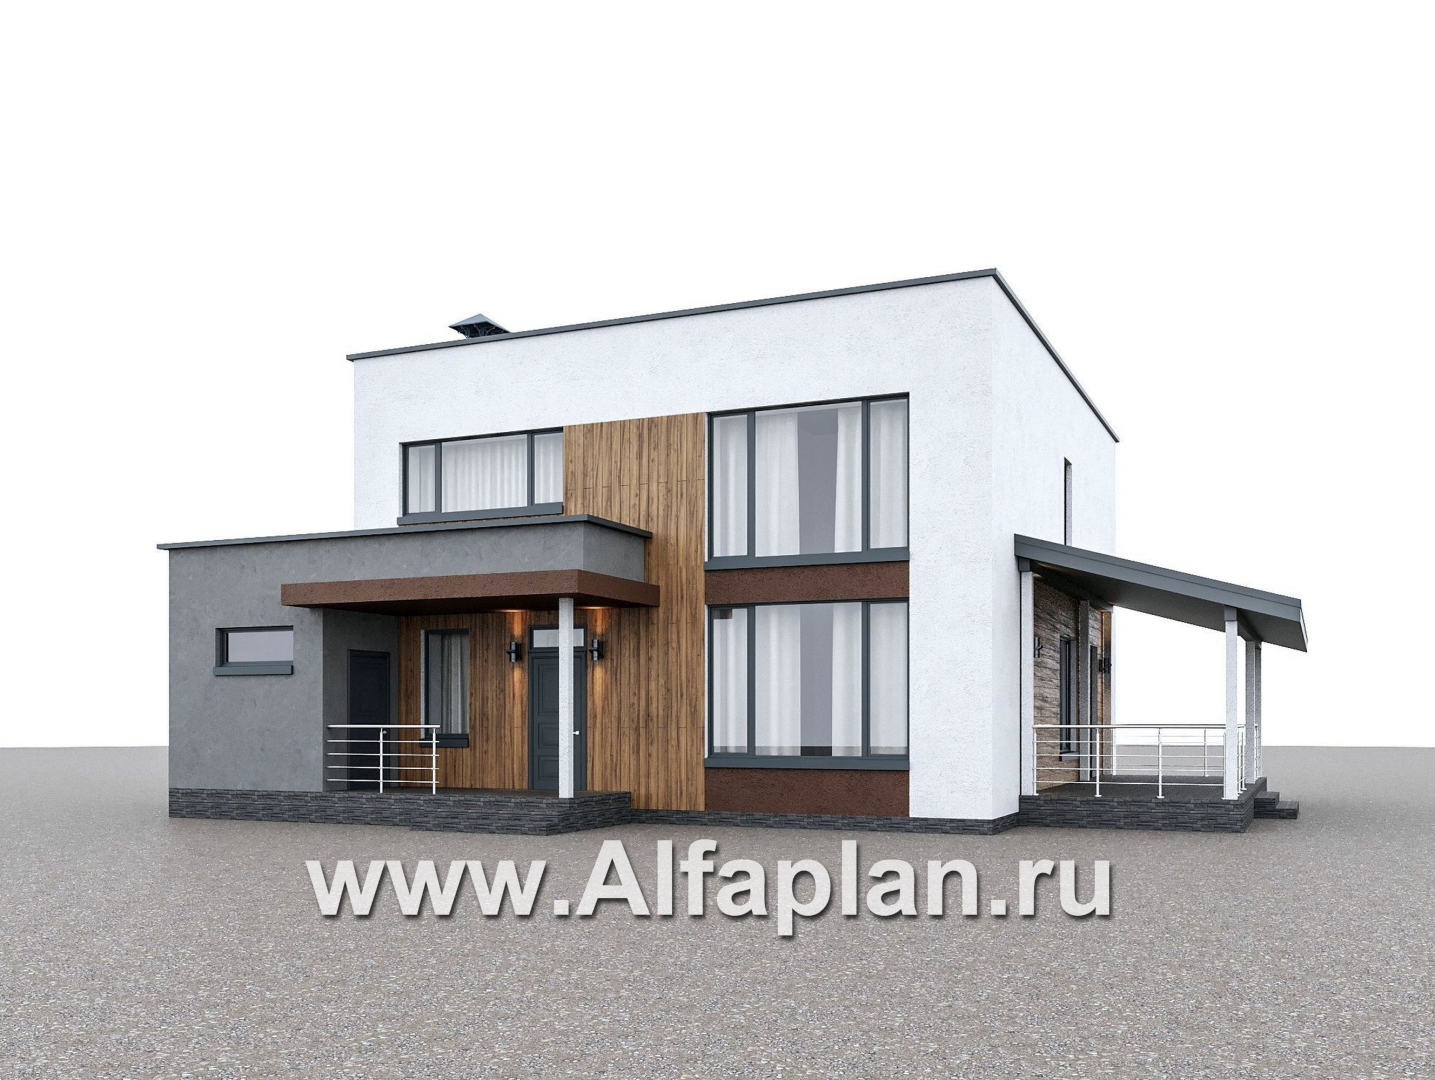 Проекты домов Альфаплан - "Коронадо" - проект дома, 2 этажа, с террасой сбоку и плоской крышей, мастер спальня, в стиле хай-тек - дополнительное изображение №1